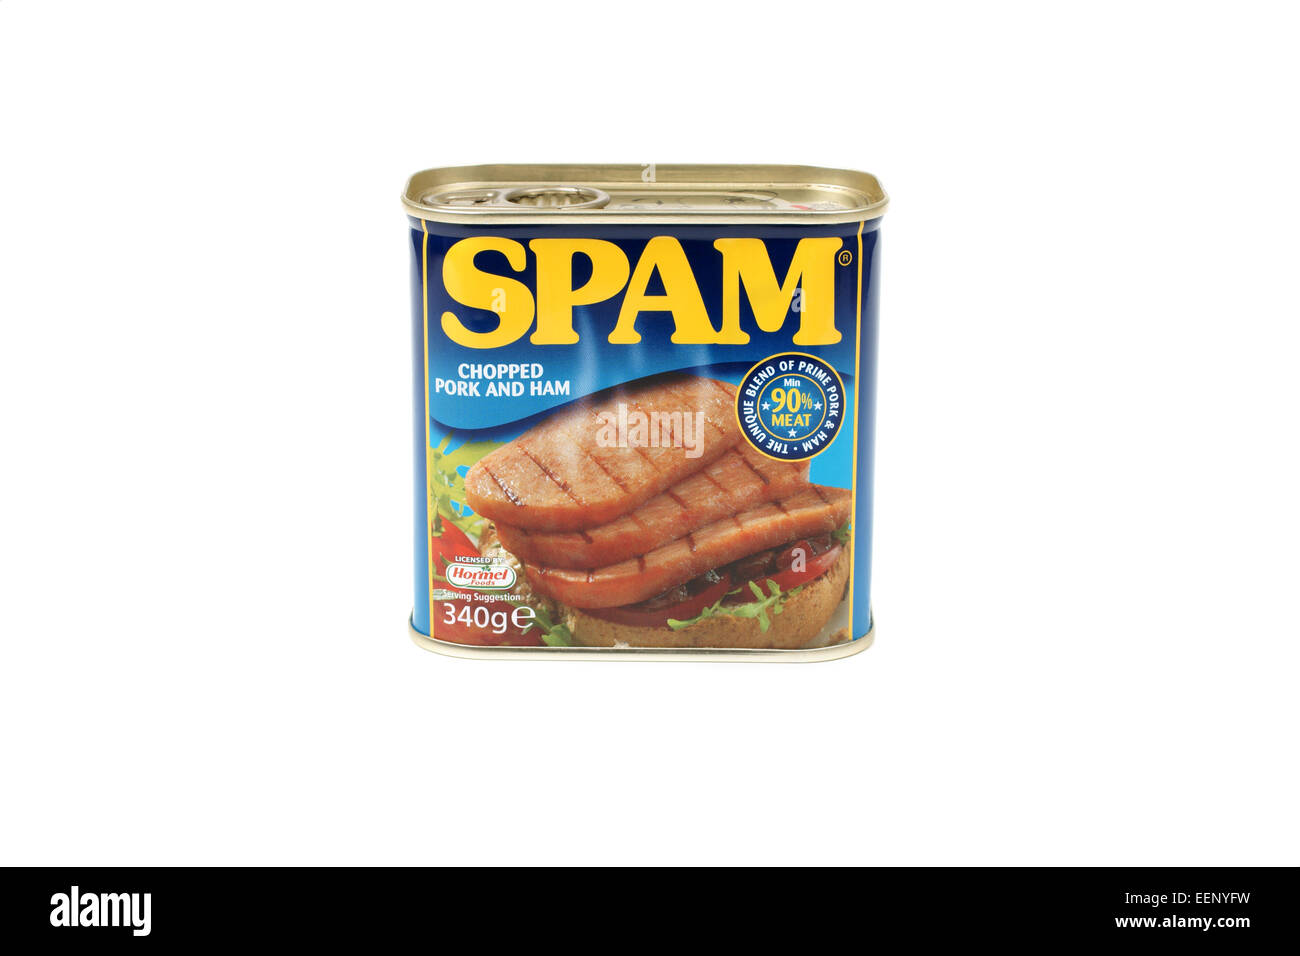 Lo spam un brand di conserve tritata precotta spalla di maiale con prosciutto introdotto nel 1937 dalla Hormel Foods Corporation Foto Stock